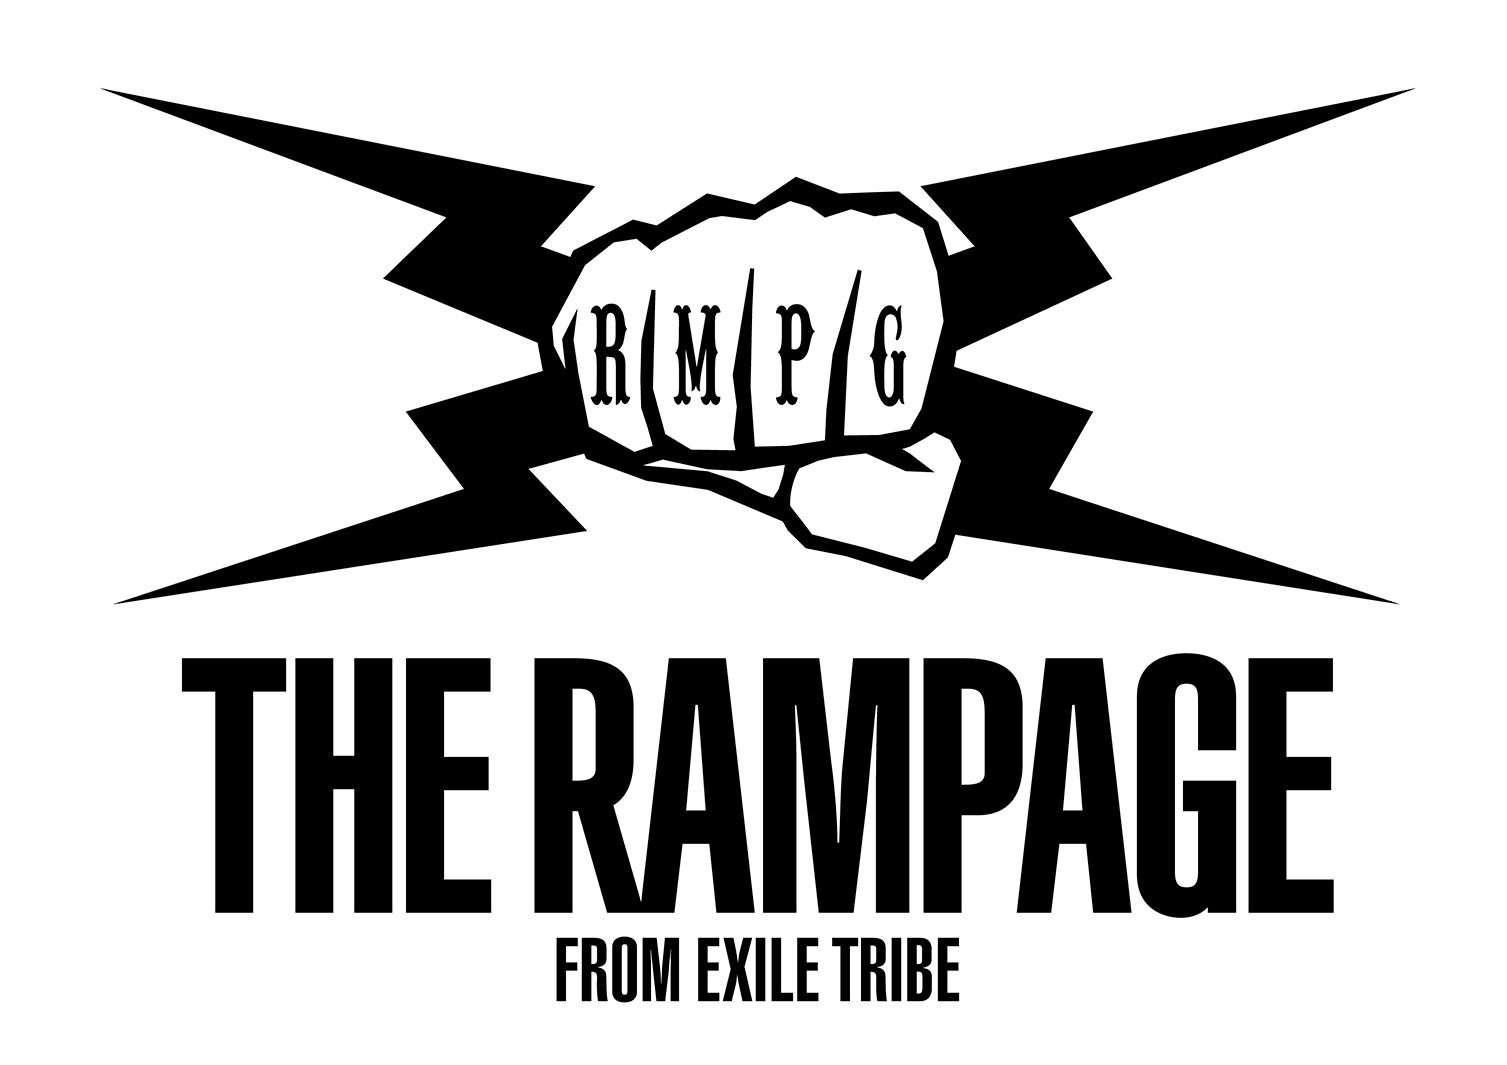 The Rampage 新ビジュアル解禁 軌跡 にファンから反響 モデルプレス